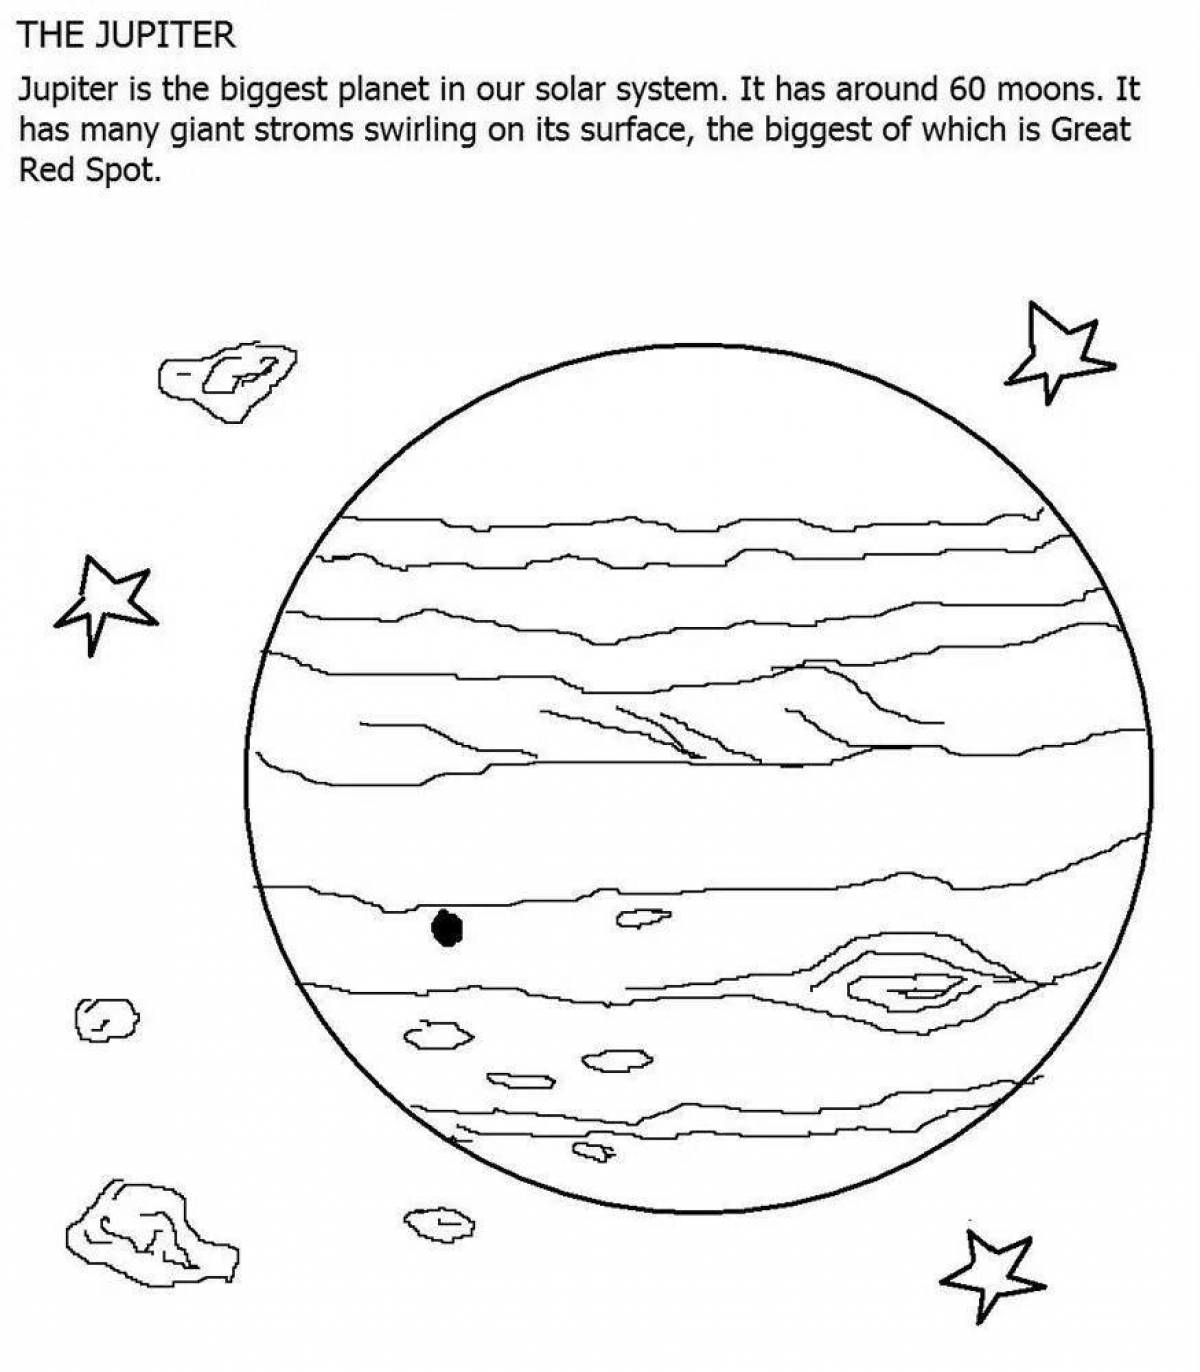 Юпитер раскраска для детей